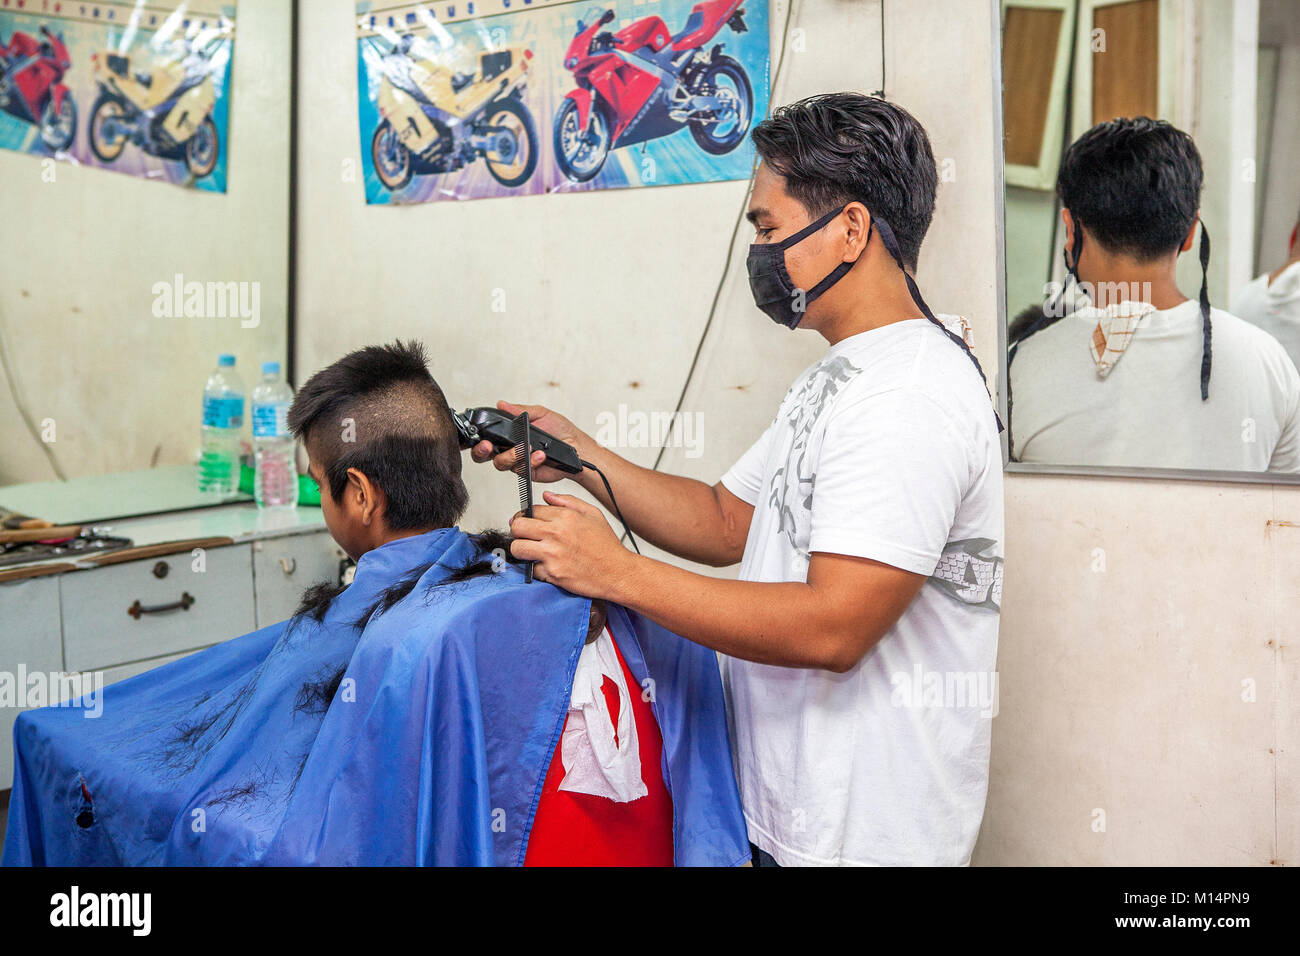 Ein Filipino Friseur schneidet eine hohe und enge fade Frisur auf ein Teenager in Barretto, Luzon, Philippinen. Stockfoto